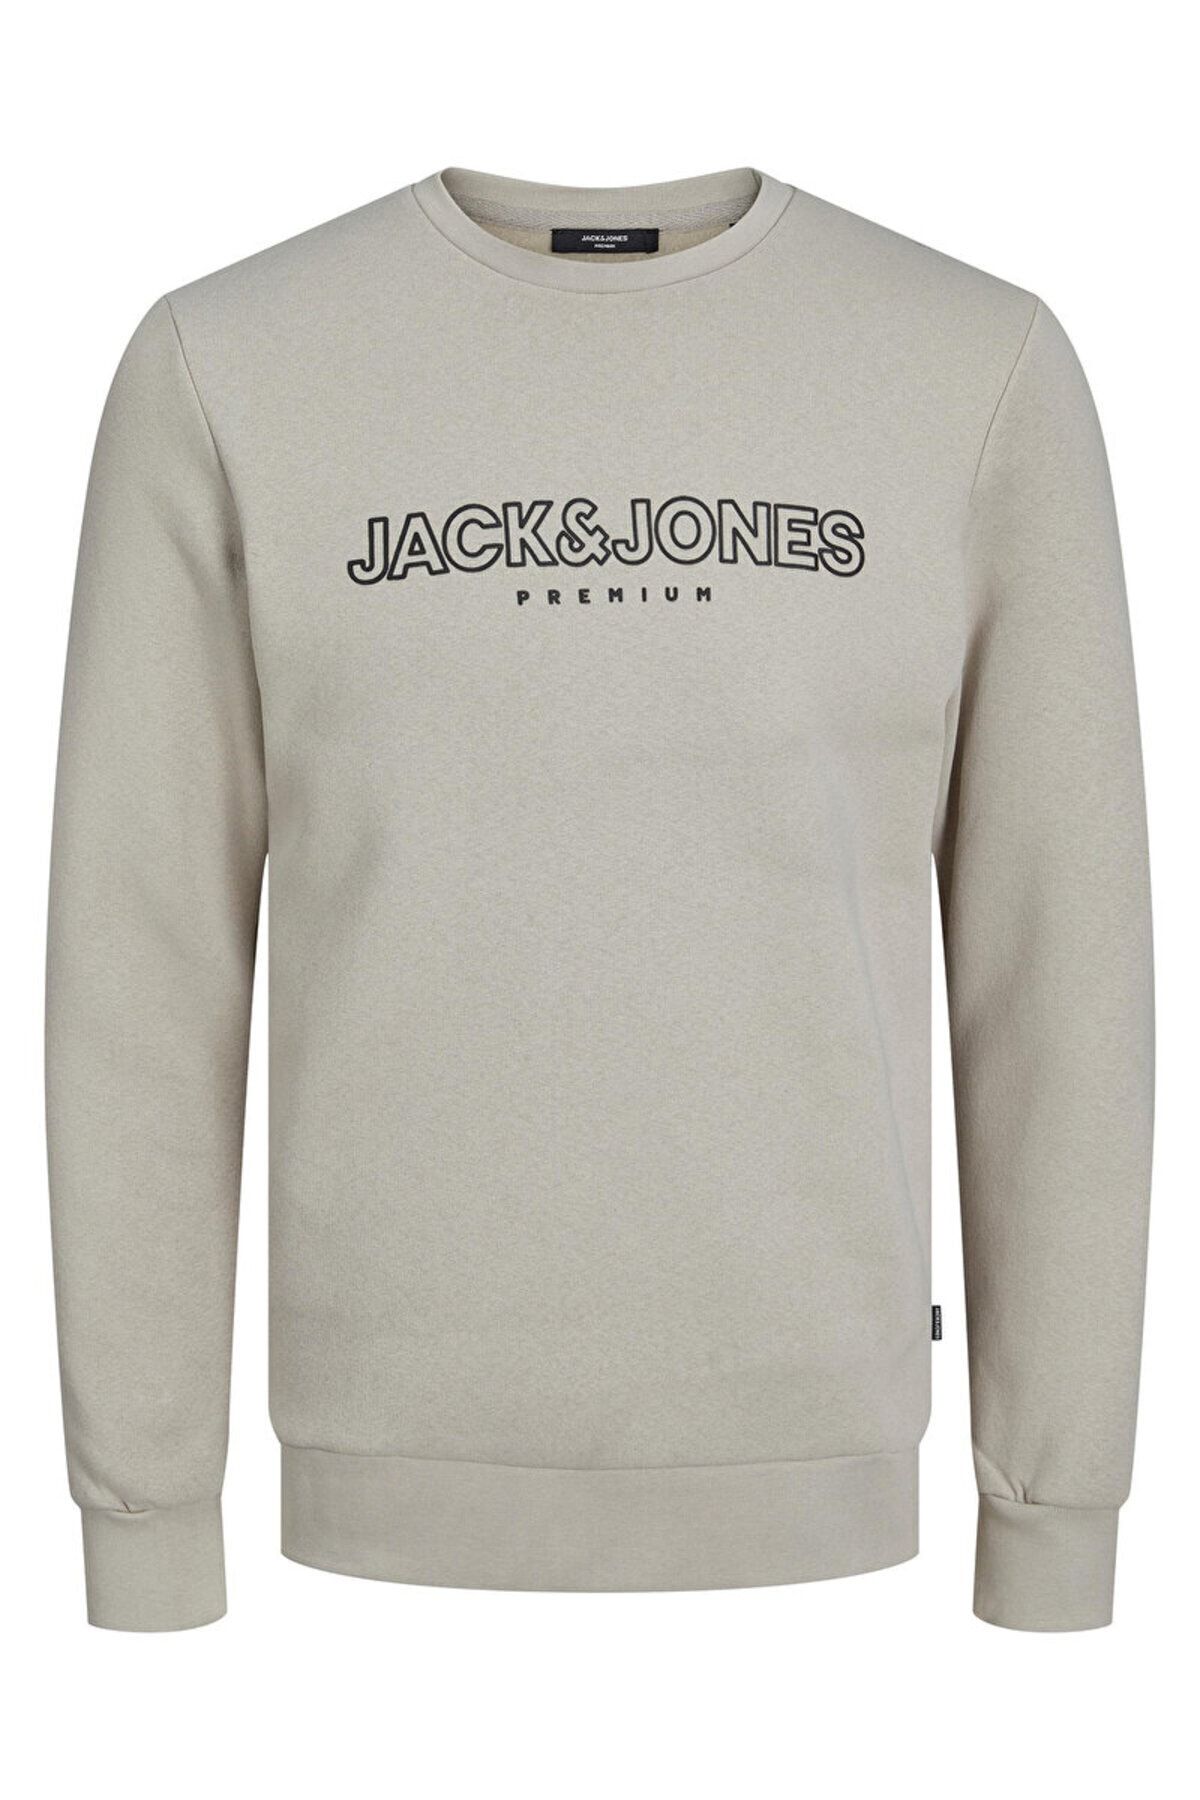 Jack & Jones Logo Baskılı Erkek Sweatshirt